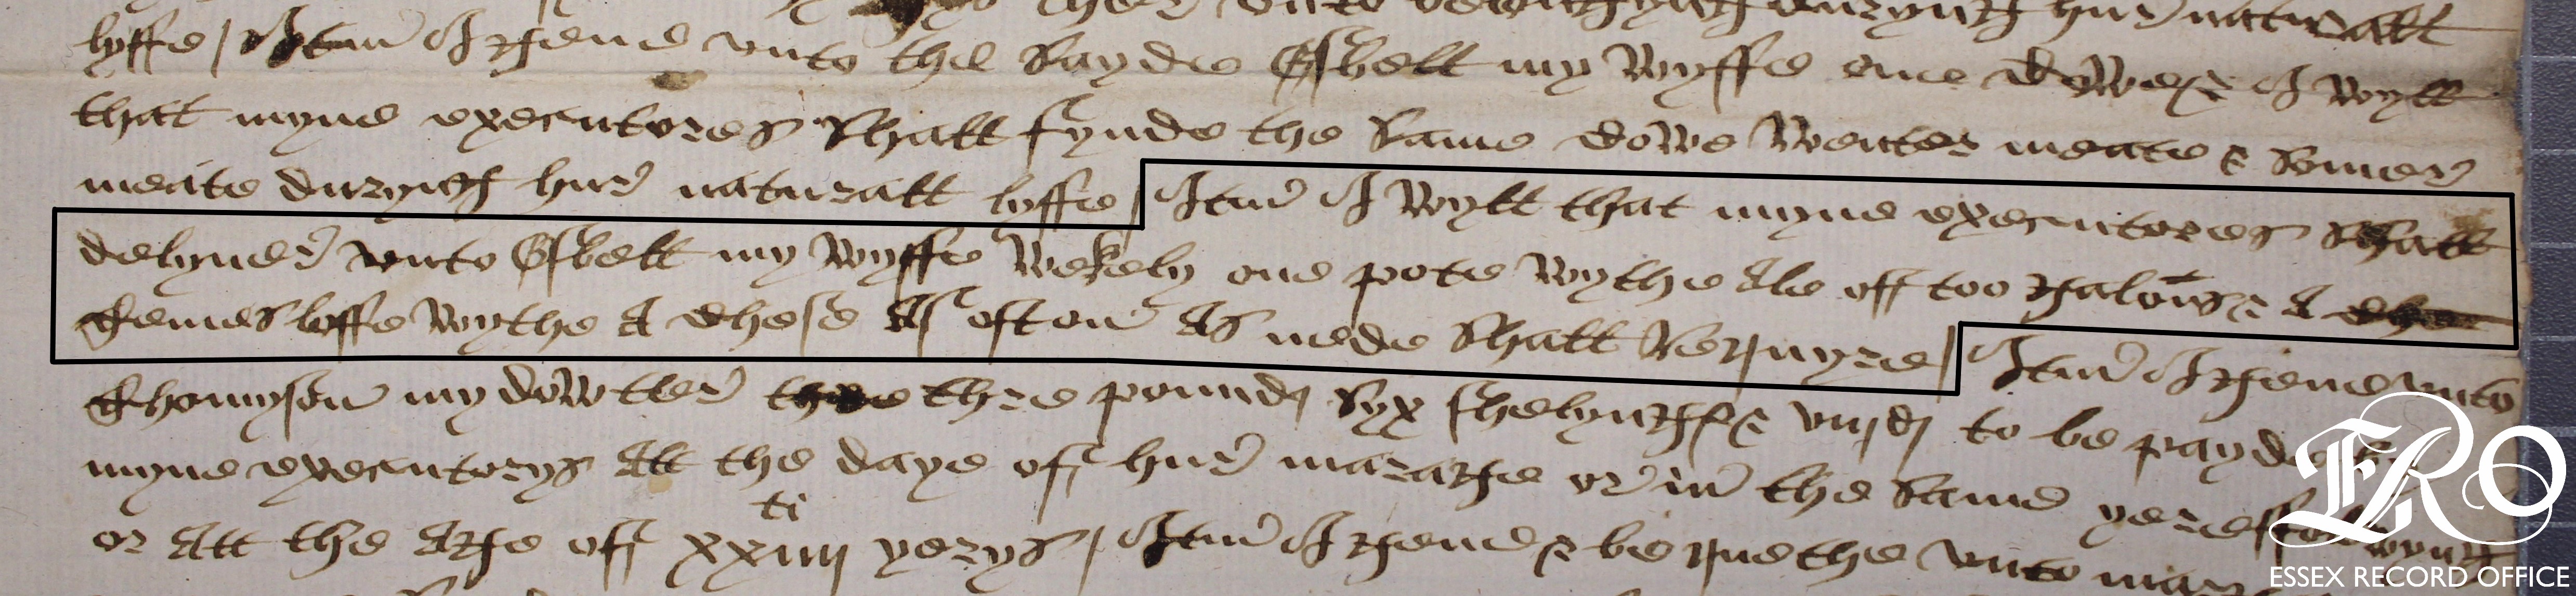 Close up of manuscript. Black ink on paper, secretary hand, sentence concerning temes loaf outlined in black